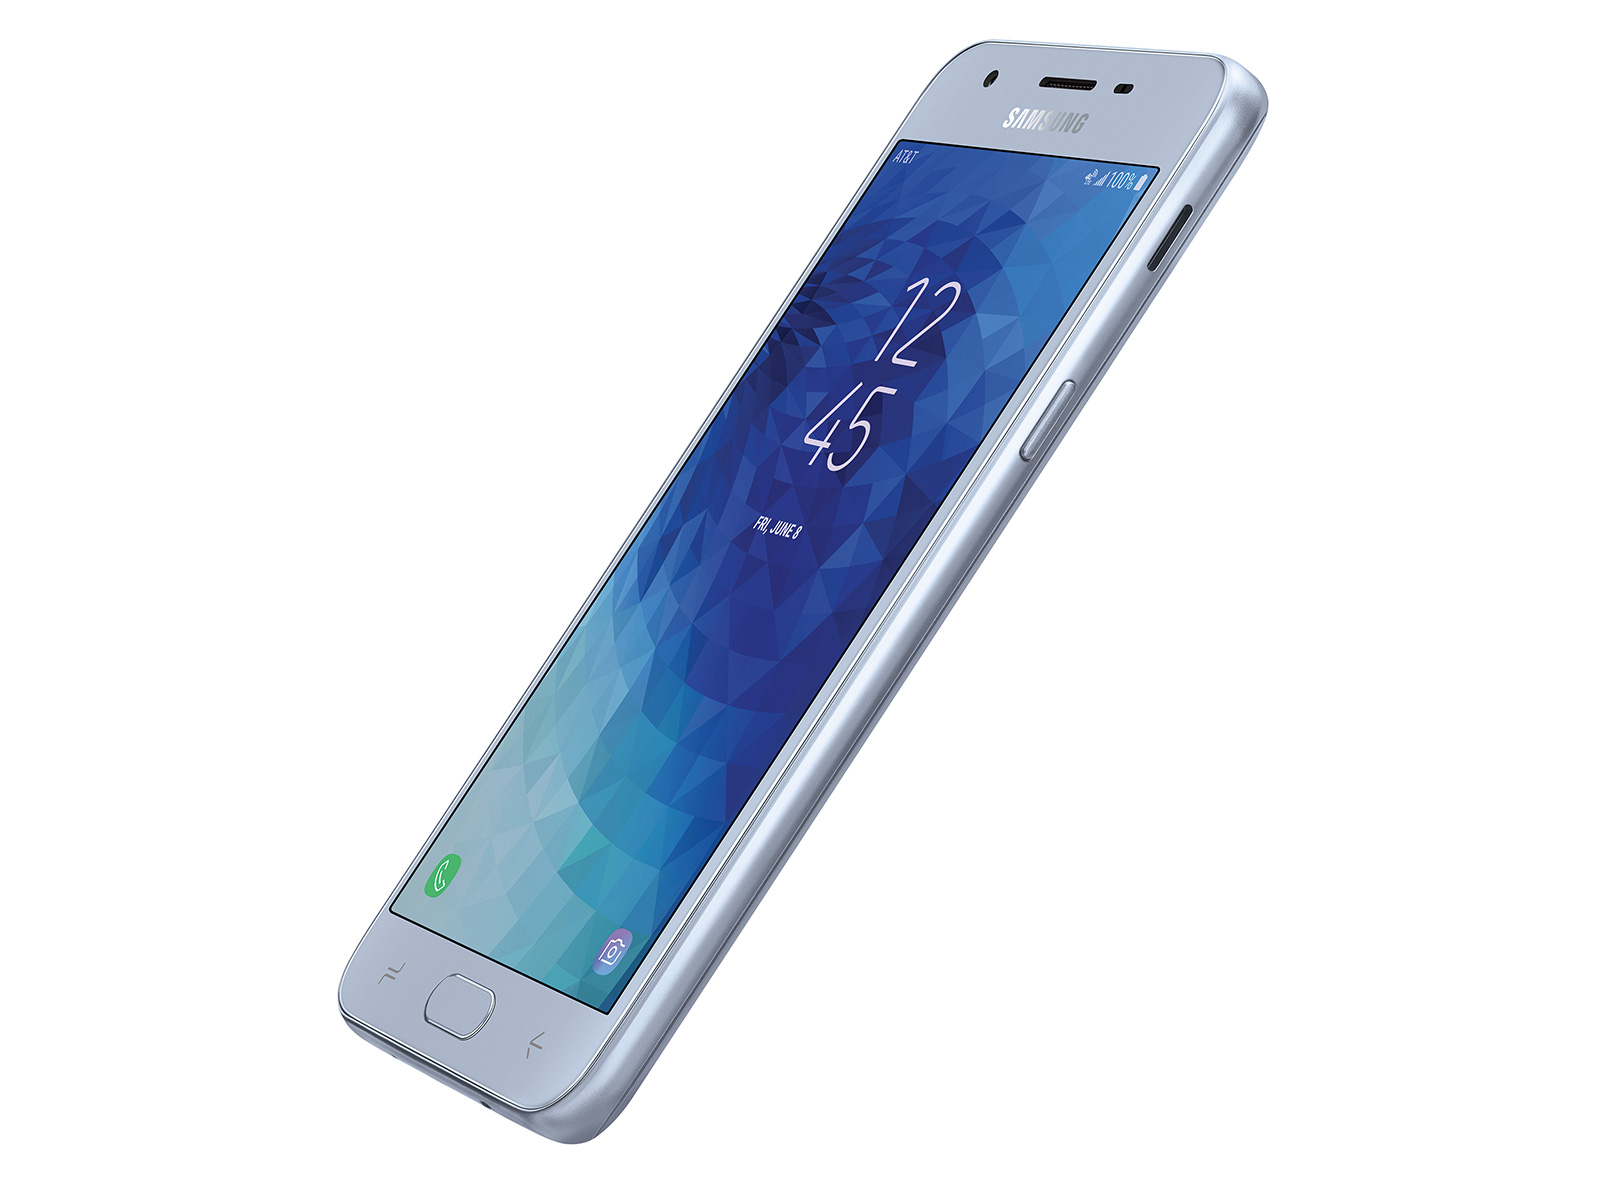 Thumbnail image of Galaxy J3 2018 16GB (AT&T)